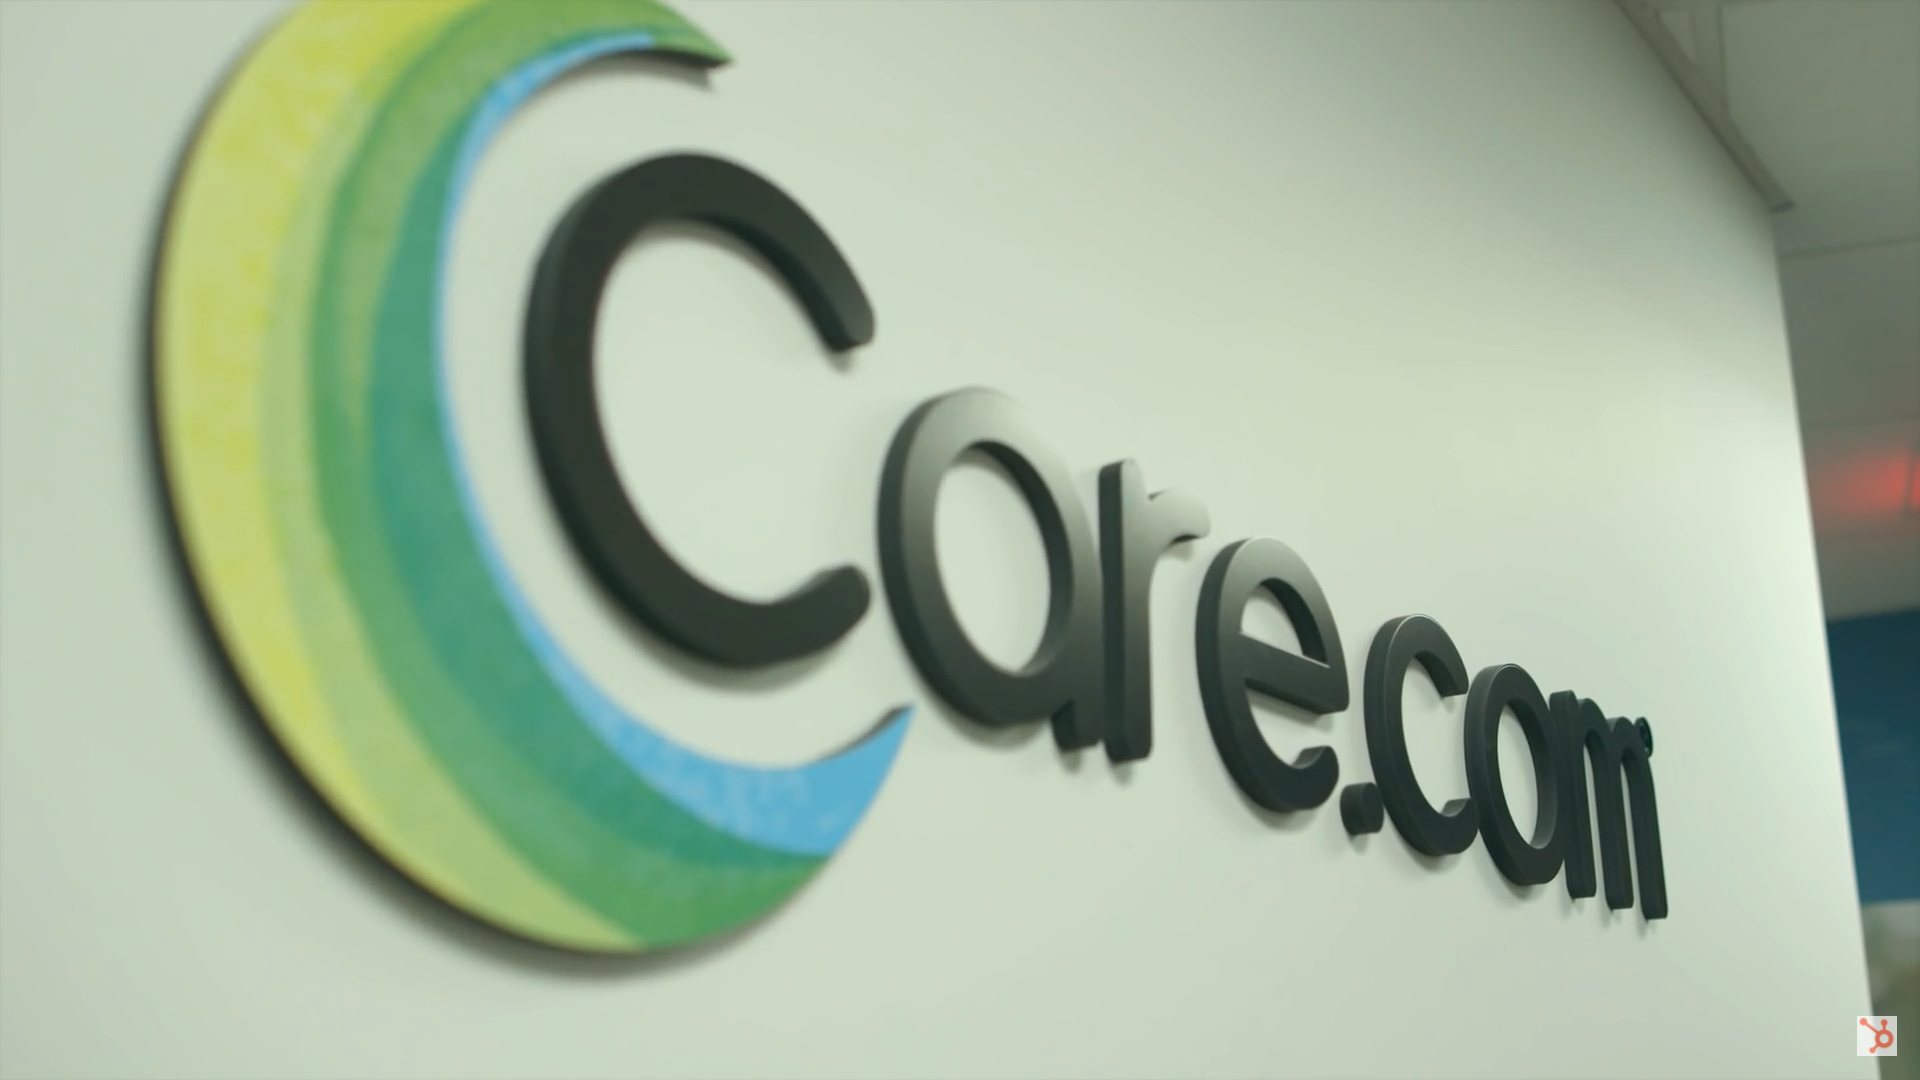 care.com logo on white wall